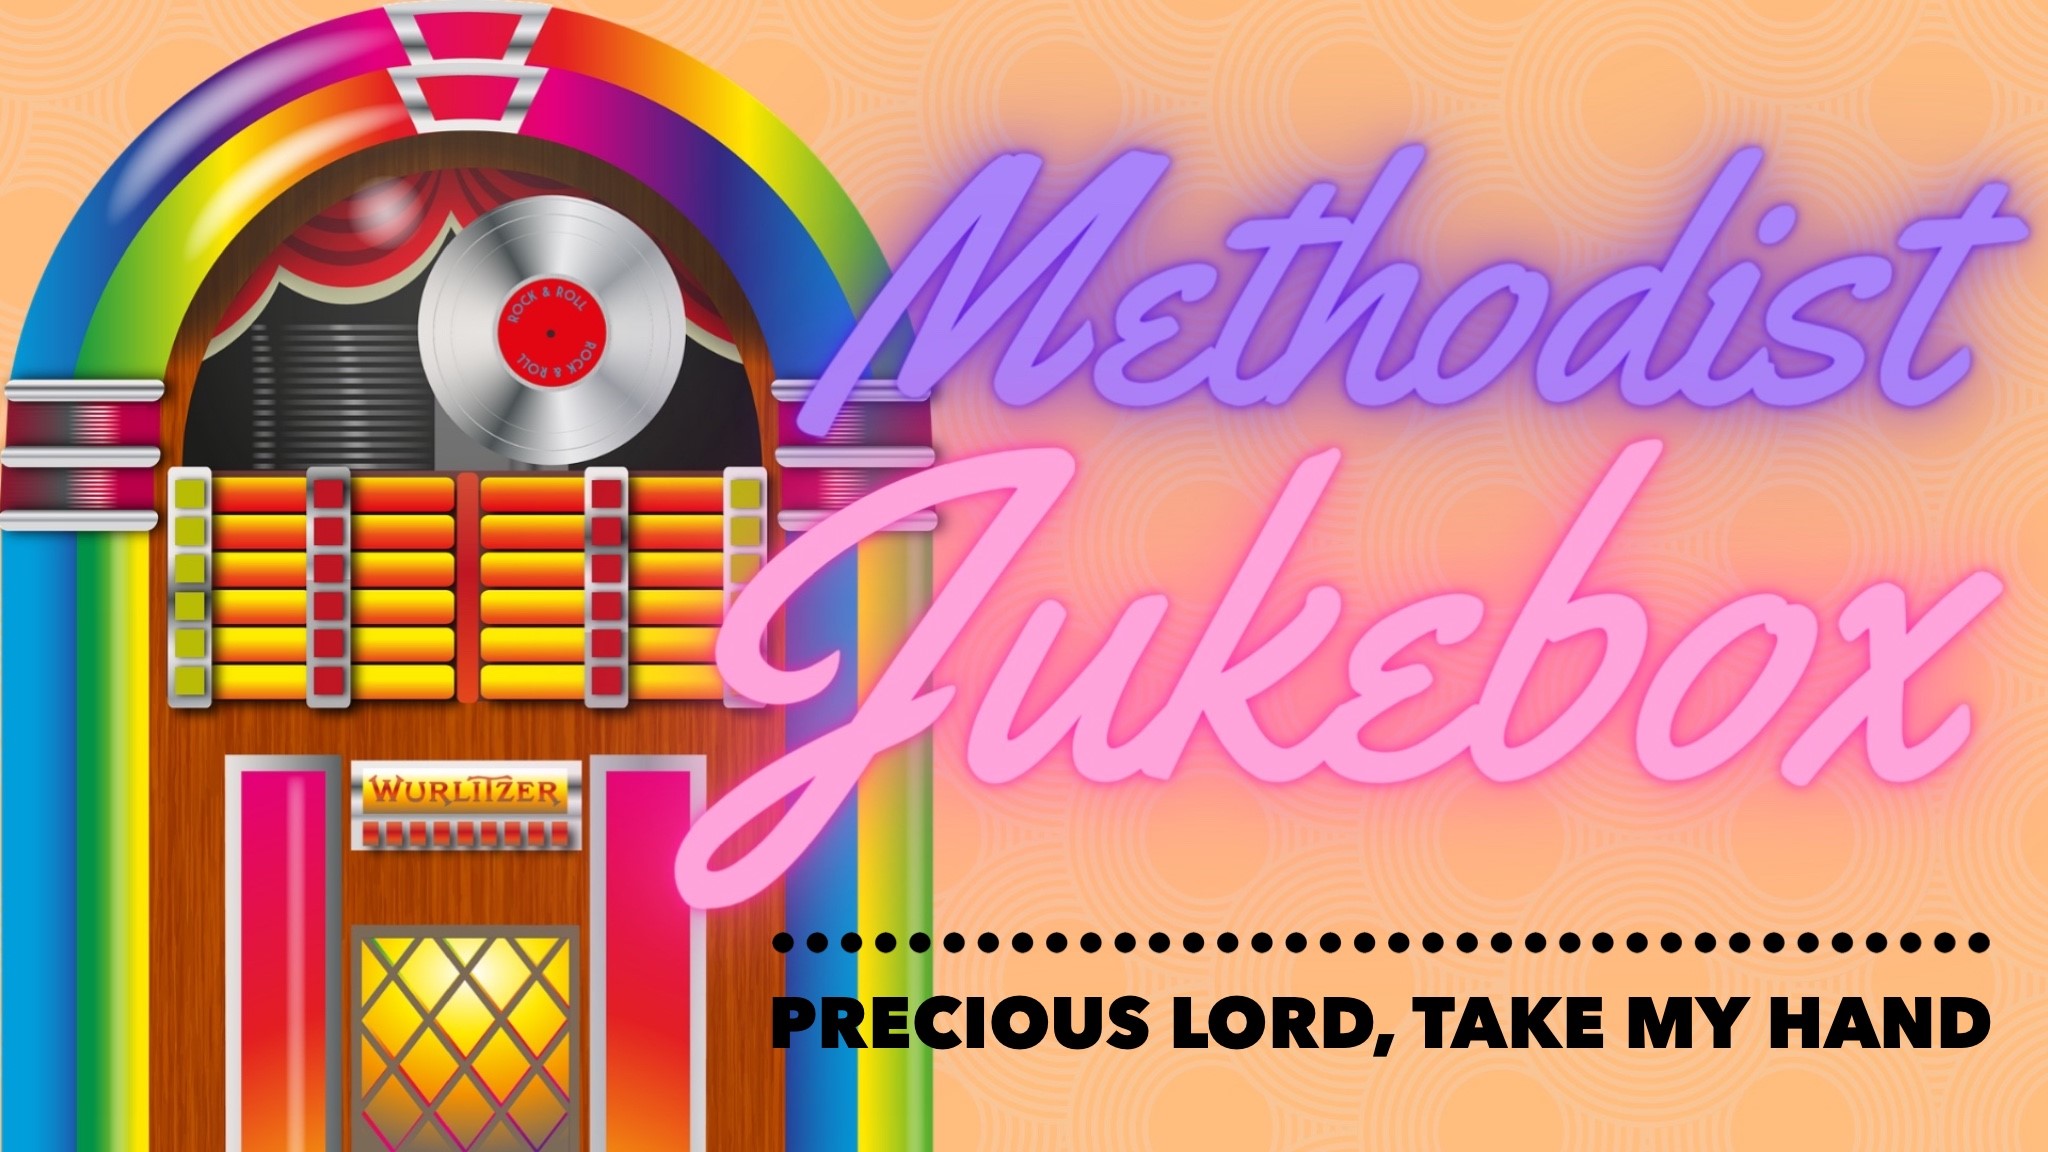 Methodist Jukebox